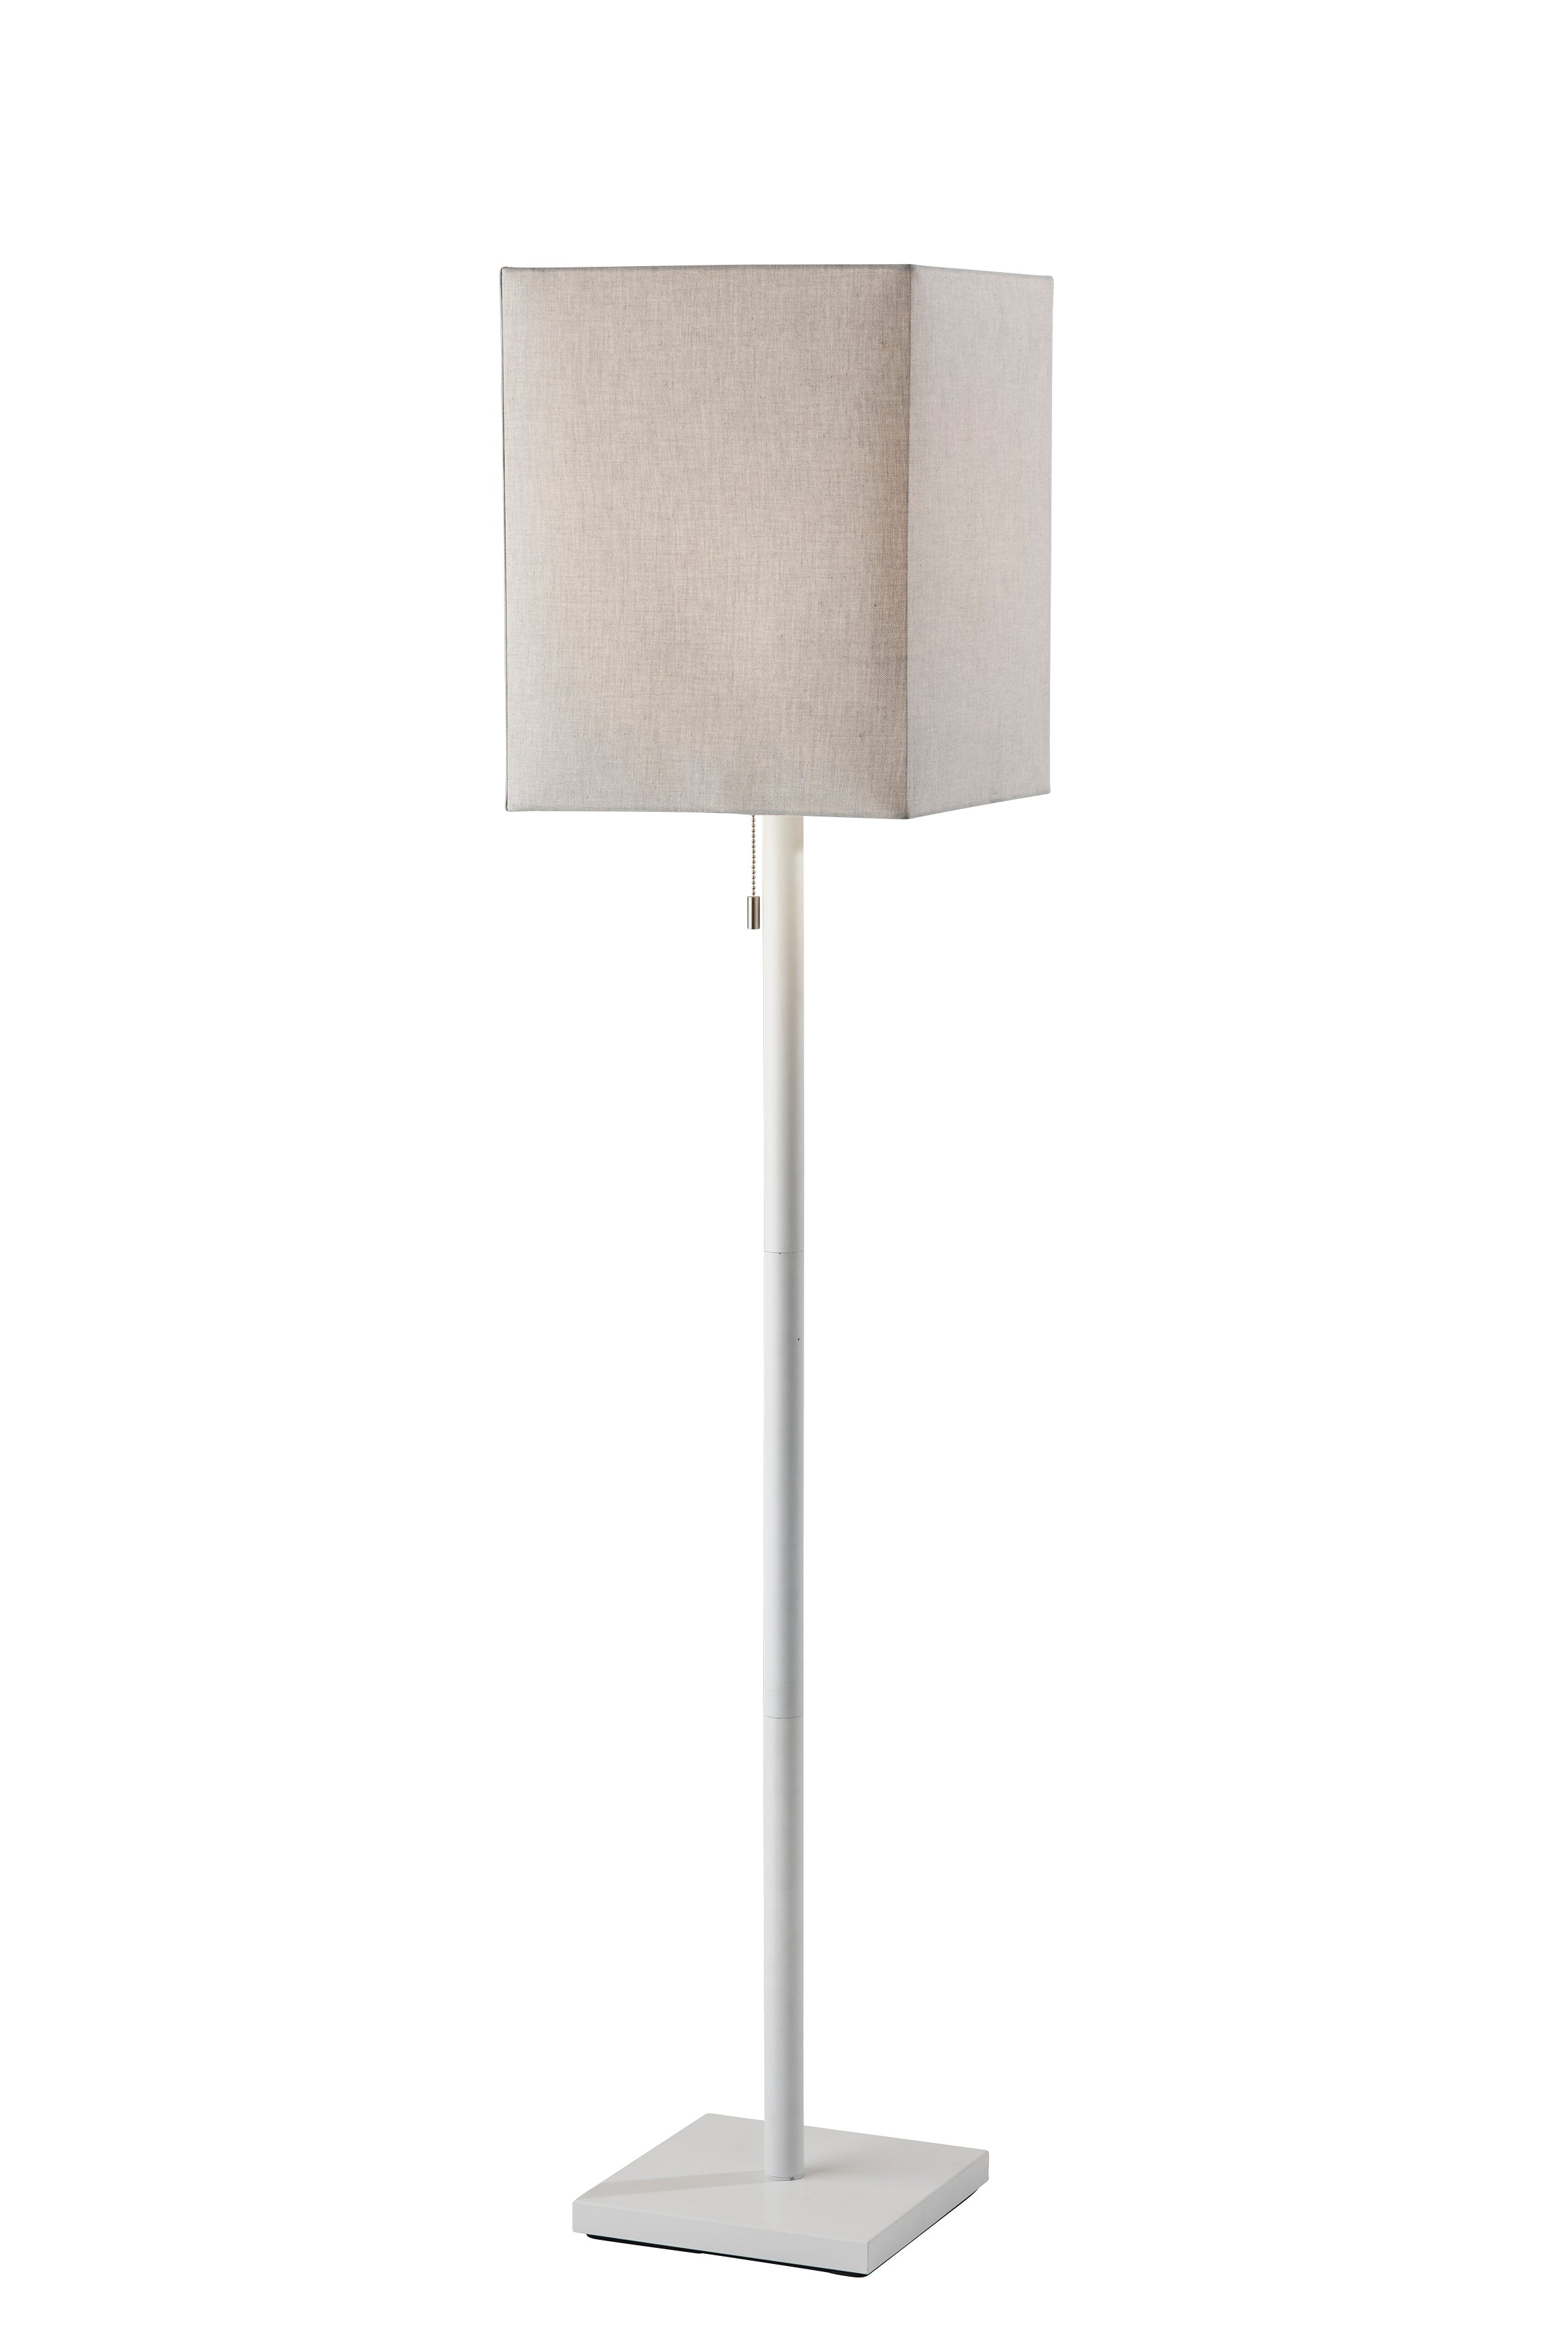 ESTELLE Floor lamp White - 1567-02 | ADESSO